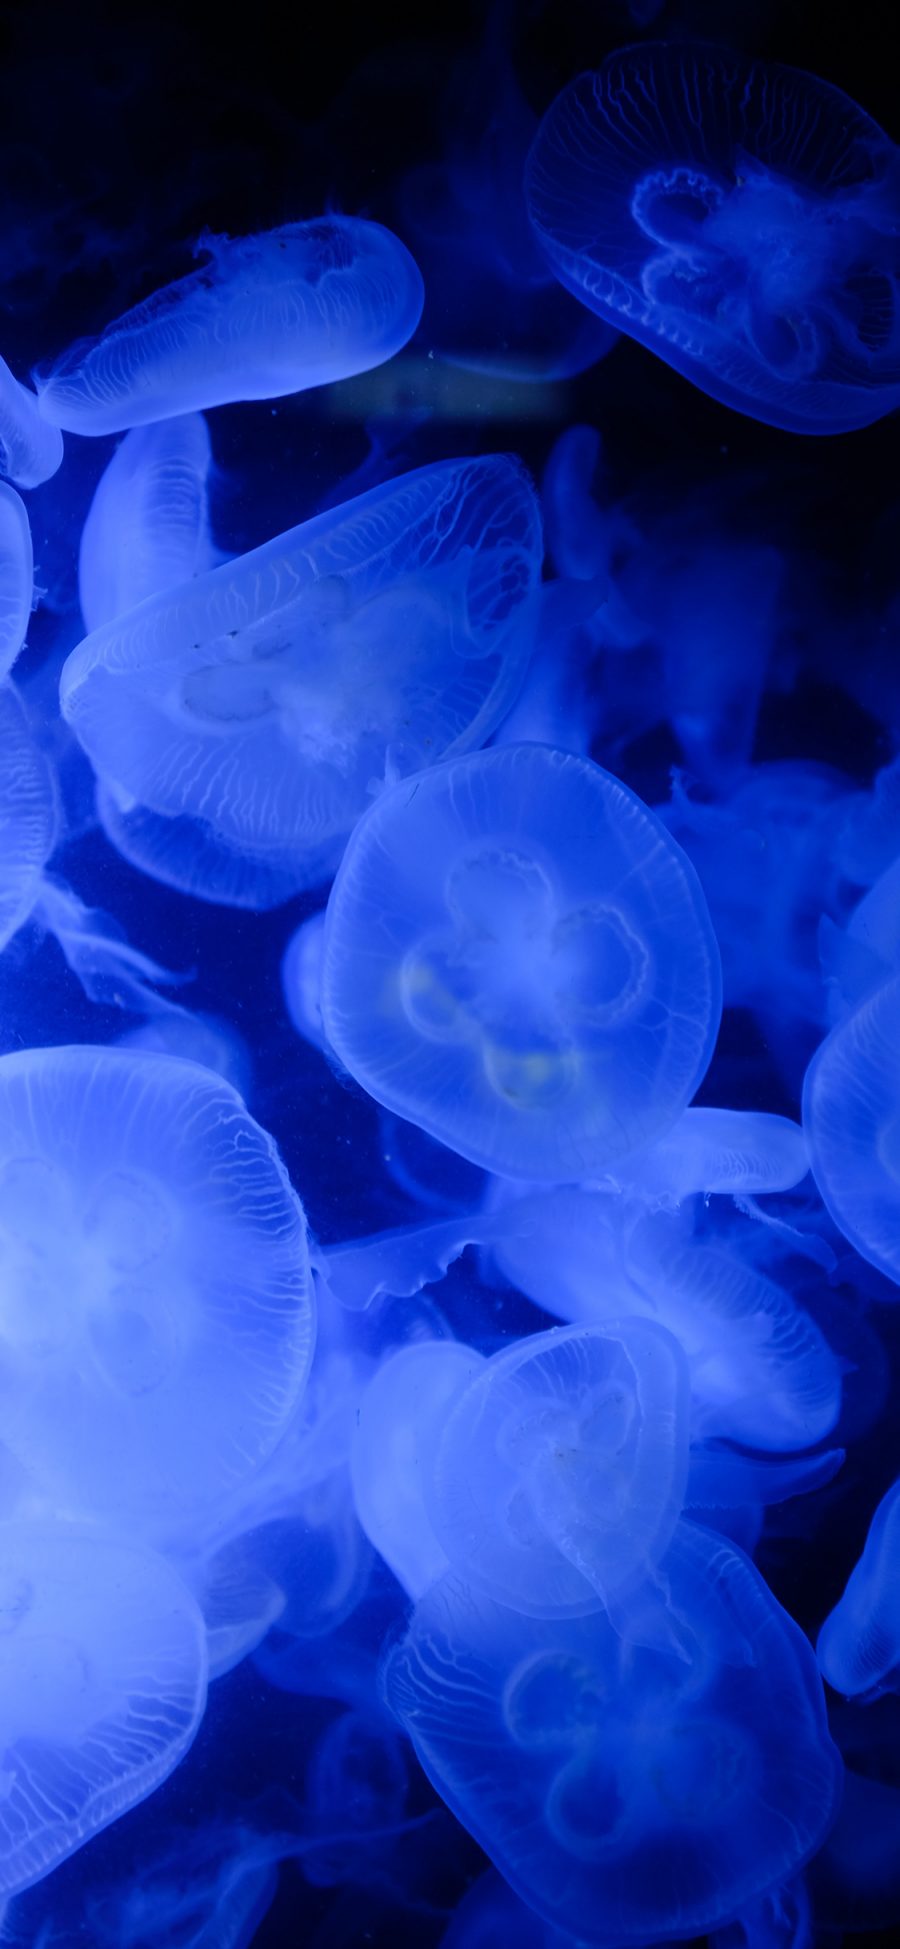 [2436×1125]水母 海洋生物 浮游 密集 蓝 苹果手机壁纸图片